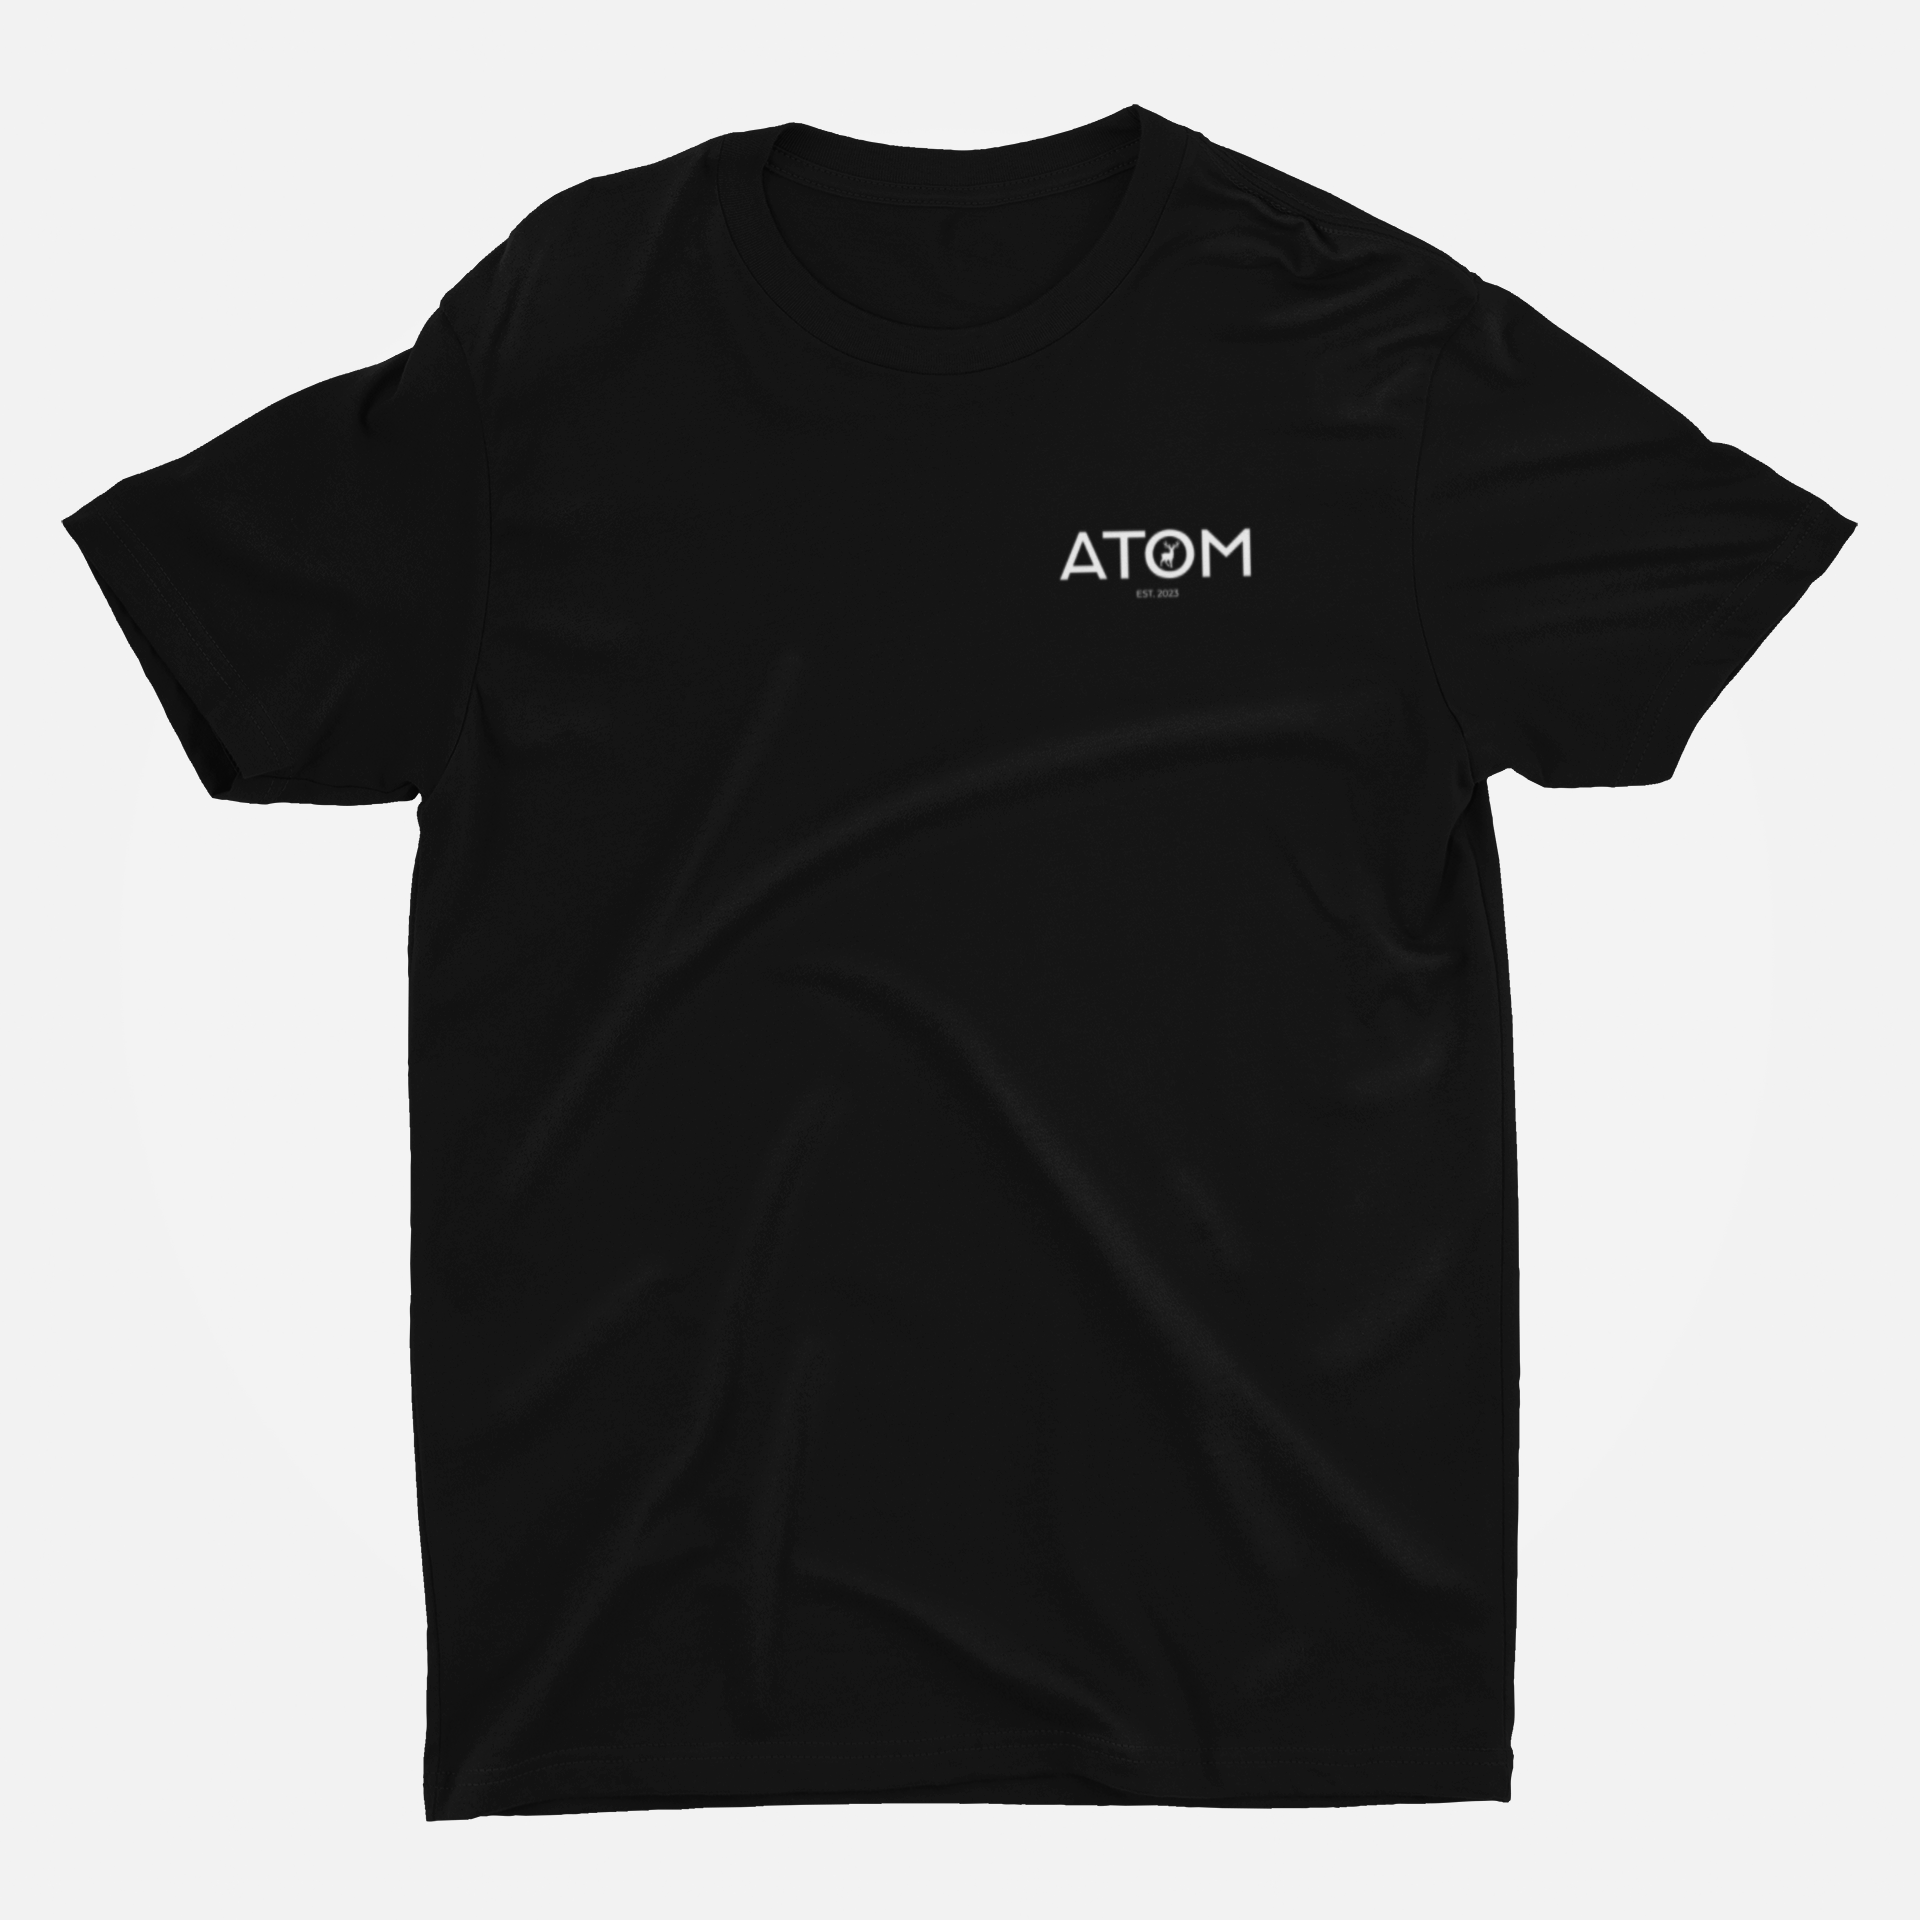 ATOM Logo Basic Black Round Neck T-Shirt for Men.